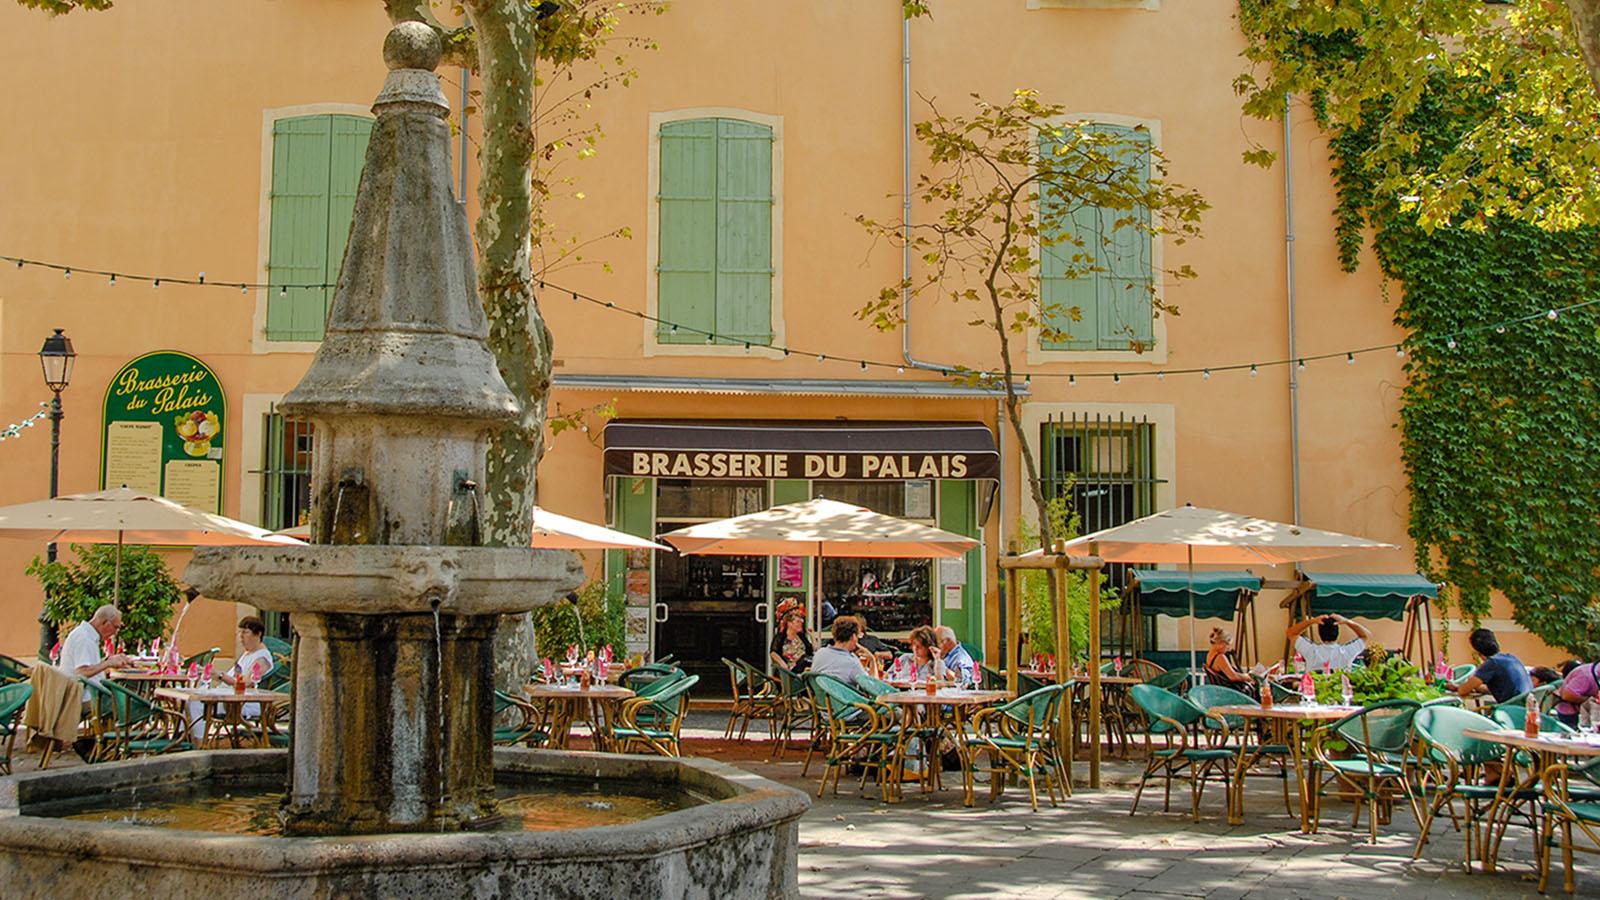 Béziers: die Brasserie du Palais bei der Kathedrale. Foto: Hilke Maunder